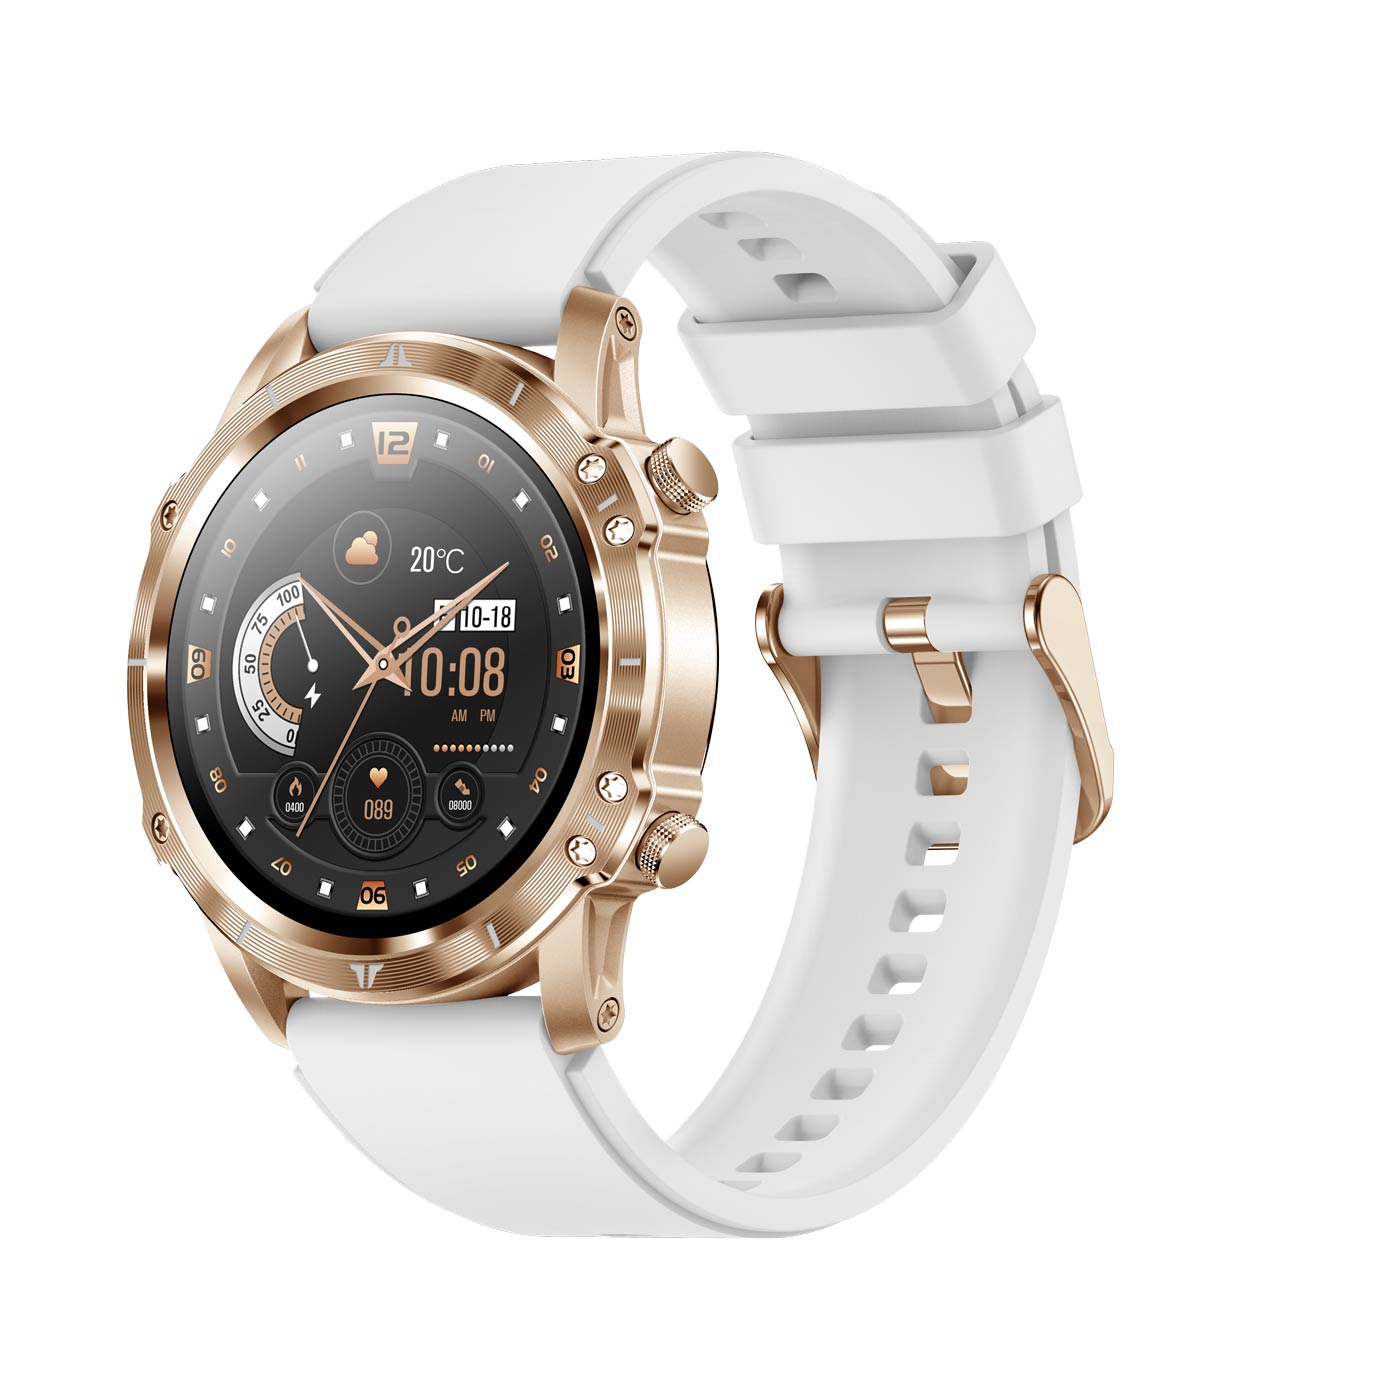 HR+ Adventure Smartwatch, gold CARNEO gold,